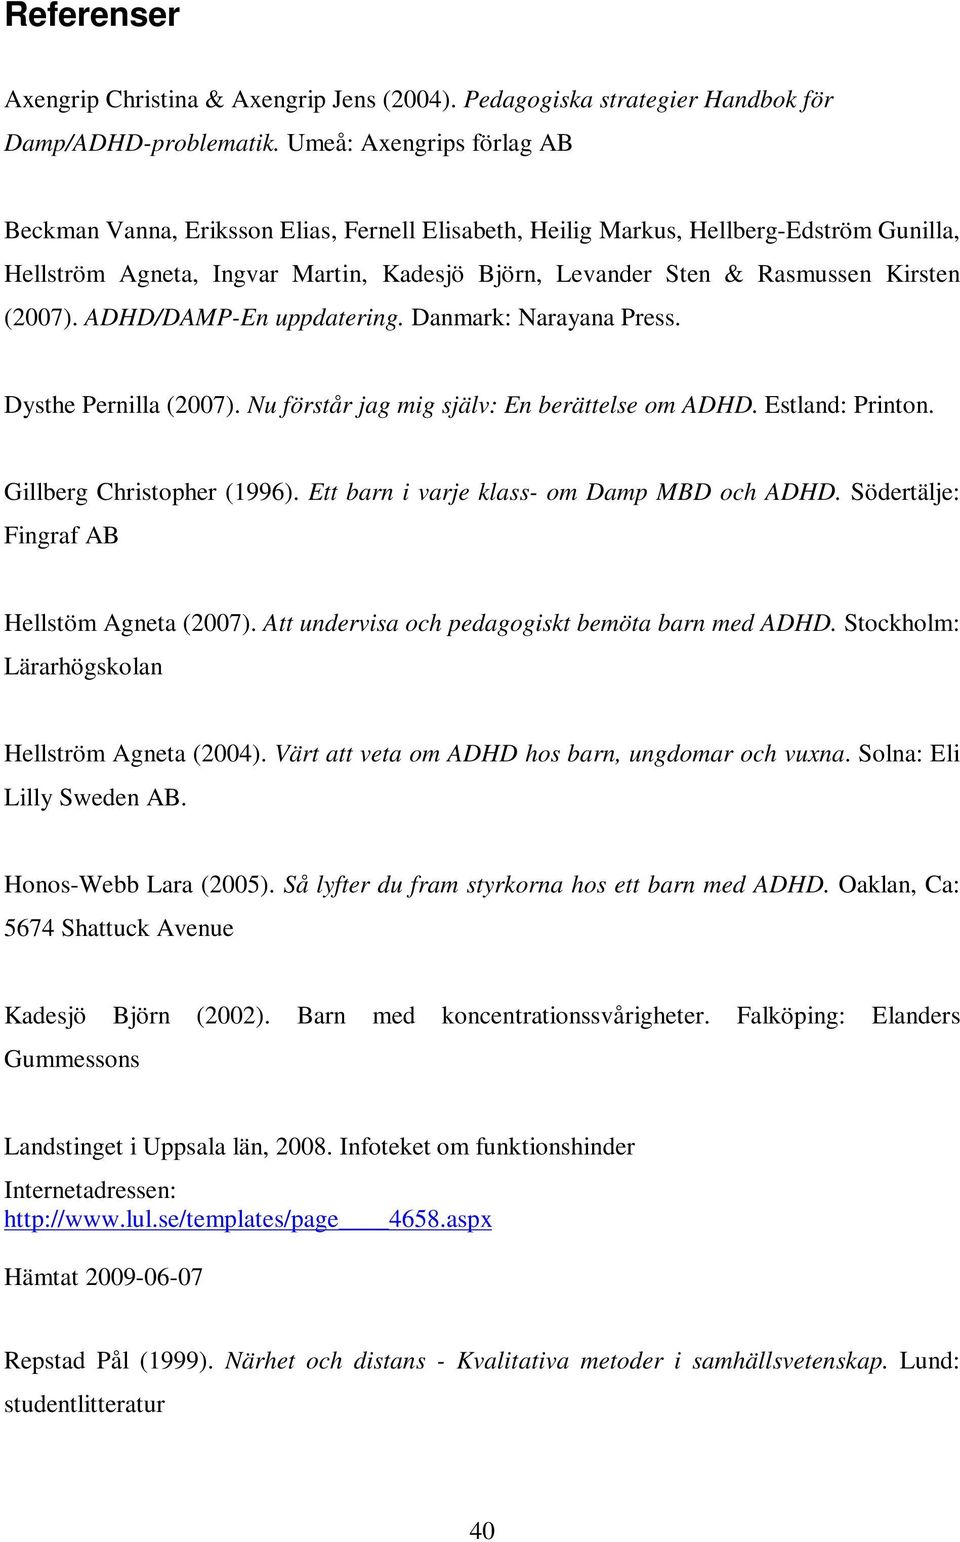 (2007). ADHD/DAMP-En uppdatering. Danmark: Narayana Press. Dysthe Pernilla (2007). Nu förstår jag mig själv: En berättelse om ADHD. Estland: Printon. Gillberg Christopher (1996).